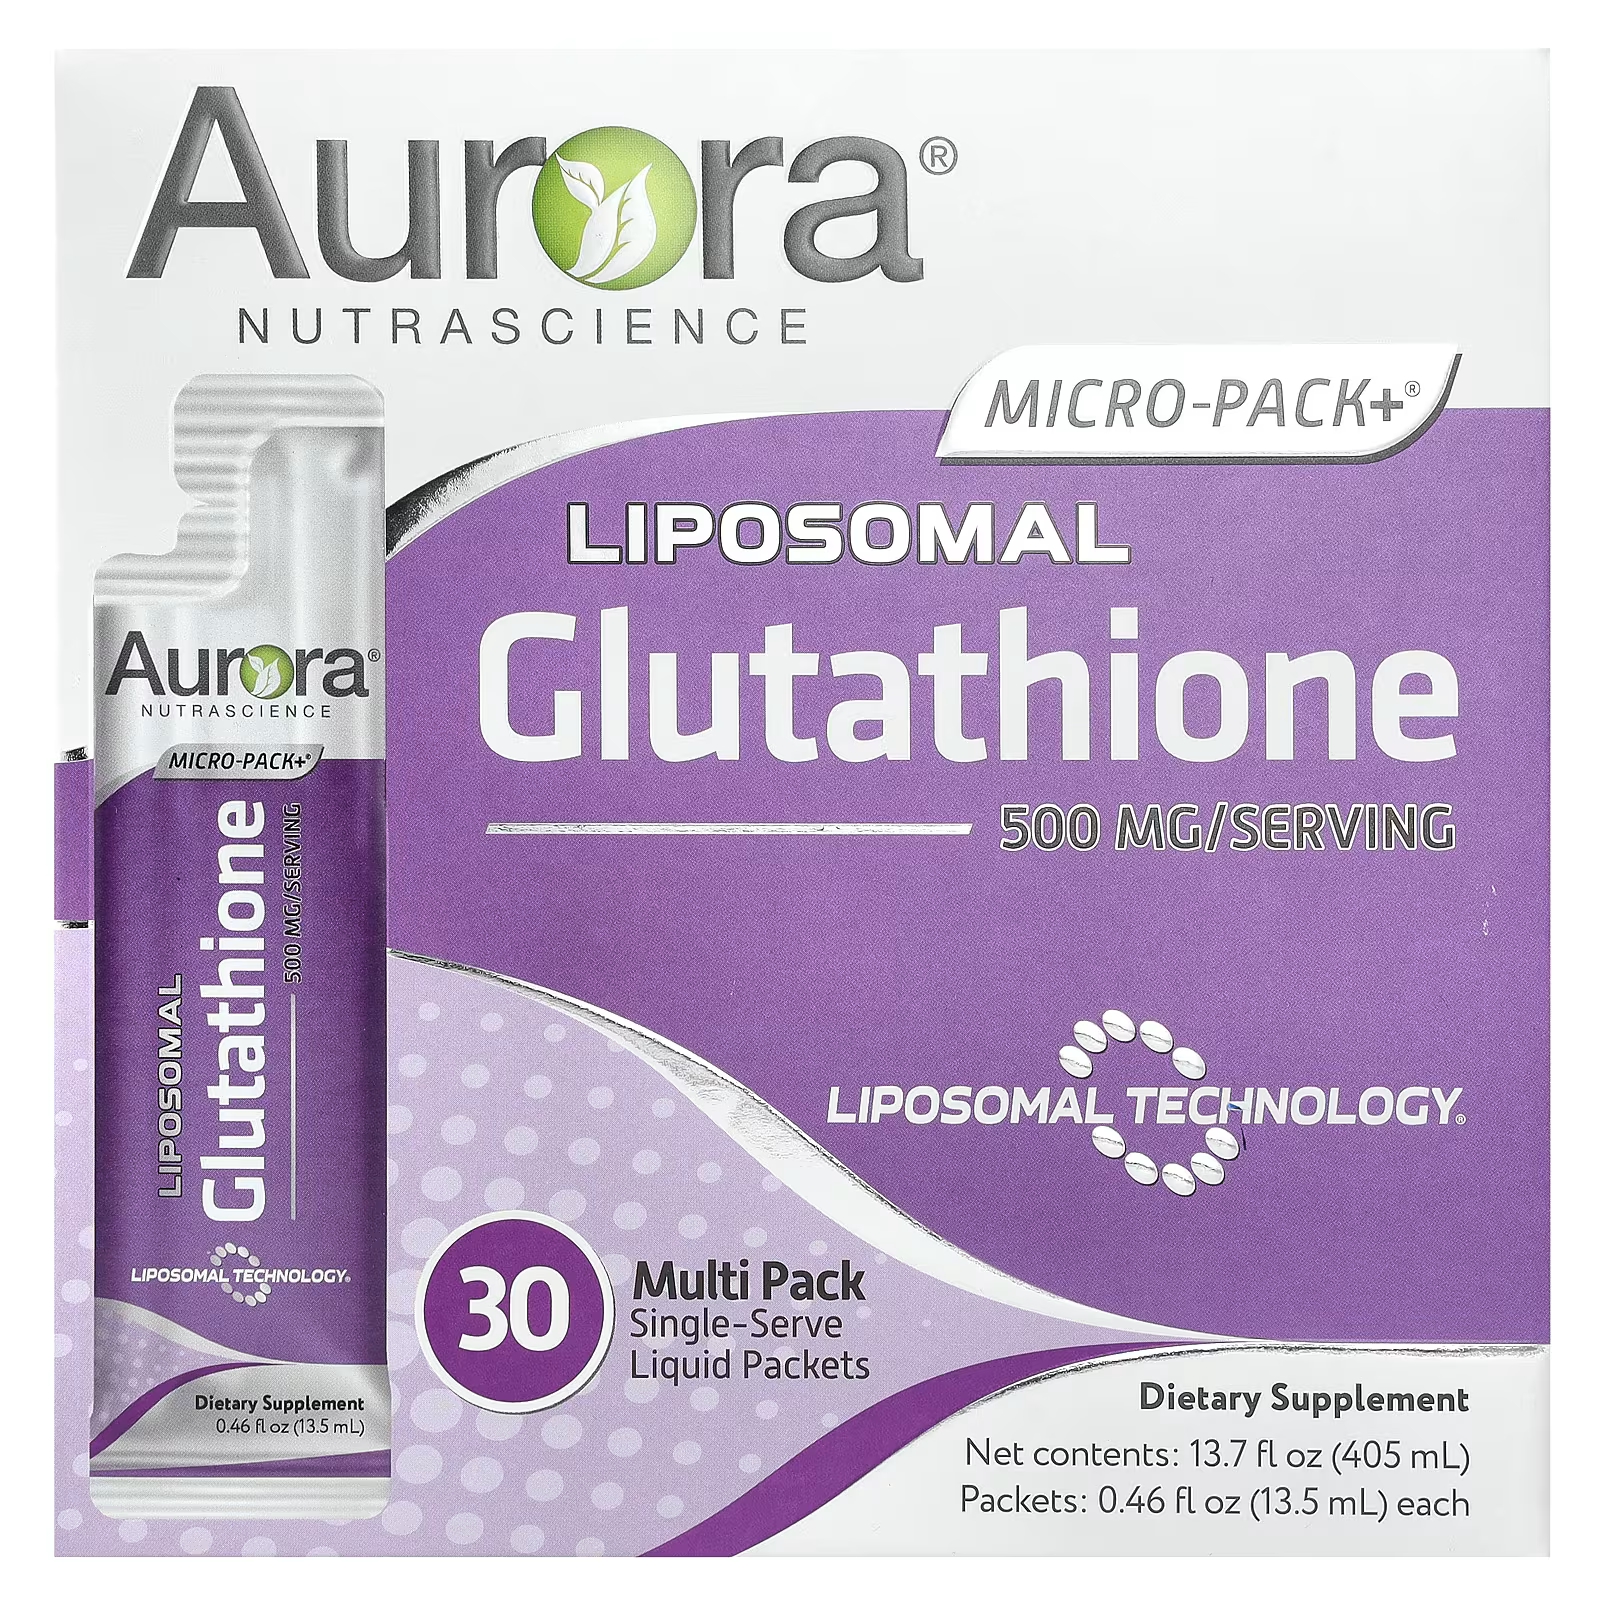 Aurora Nutrascience Micro-Pack+ липосомальный глутатион 500 мг 30 одноразовых пакетов с жидкостью по 0,46 жидких унций (13,5 мл) каждый codeage липосомальный глутатион 1000 мг 60 капсул 500 мг на капсулу